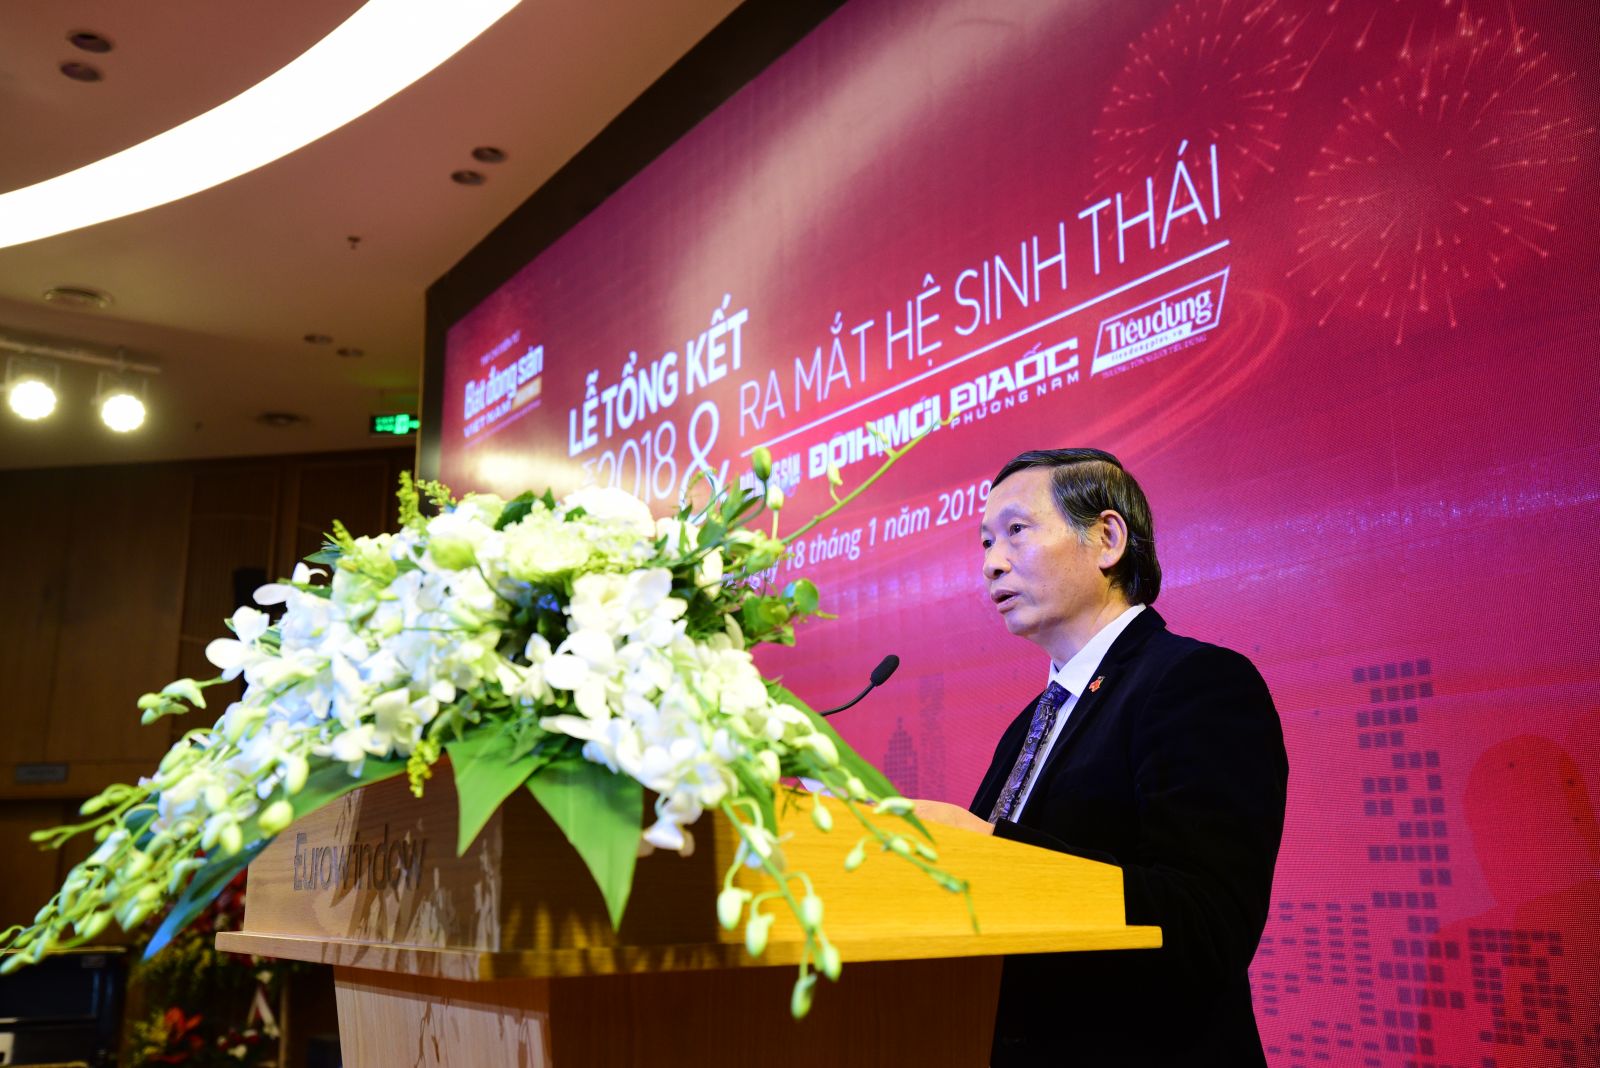 Ông Đỗ Viết Chiến - Tổng thư ký Hiệp hội Bất động sản Việt Nam đọc quyết định khen thưởng của Hiệp hội Bất động sản Việt Nam cho các tổ chức cá nhân Tạp chí điện tử Bất động sản Việt Nam